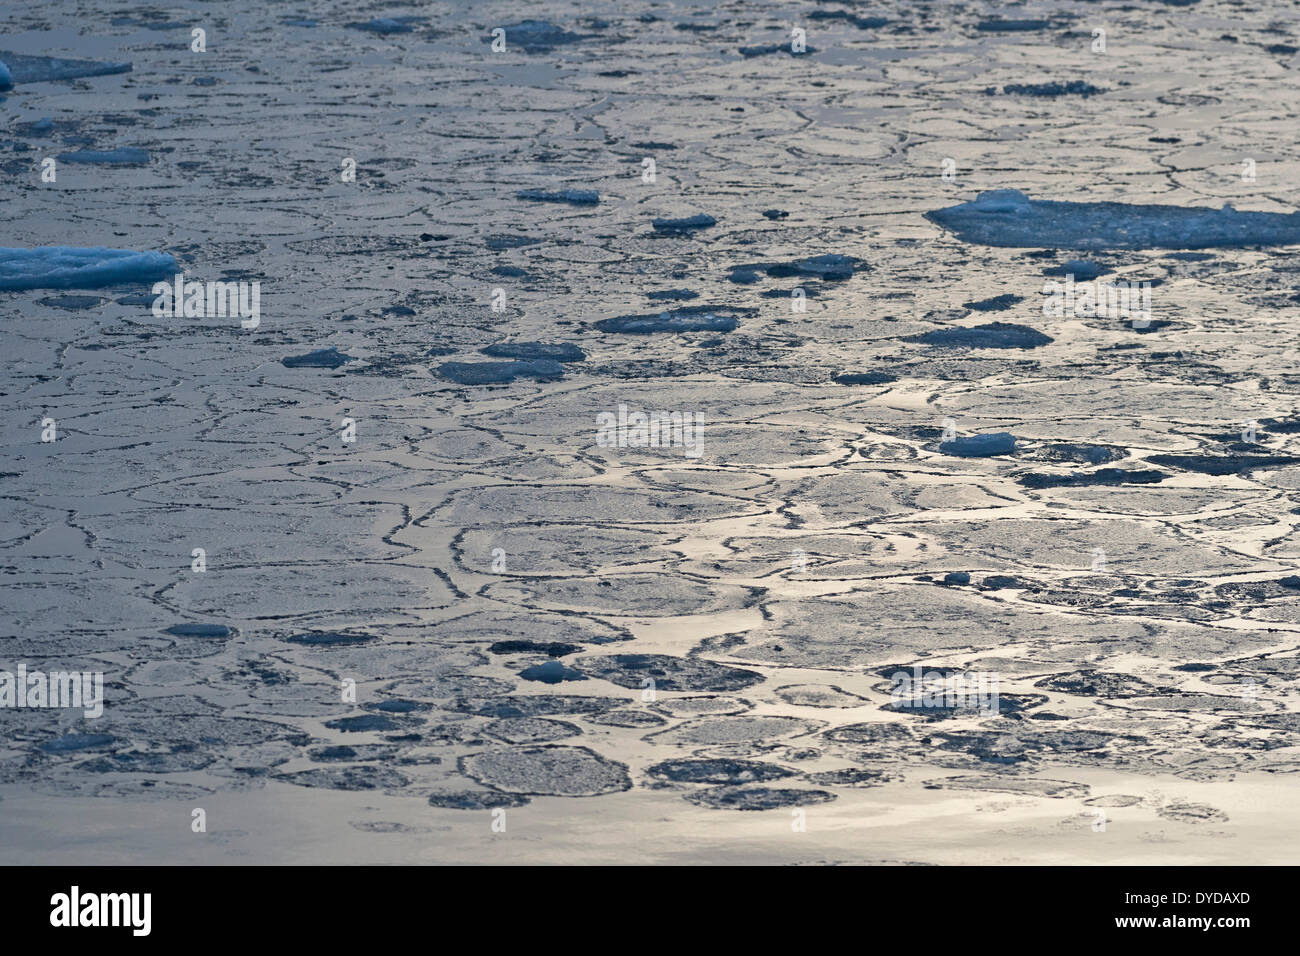 Pfannkuchen Sie-Eis, Rand des Packeises, Nordpolarmeer, Spitzbergen Insel, Spitzbergen, Svalbard und Jan Mayen, Norwegen Stockfoto